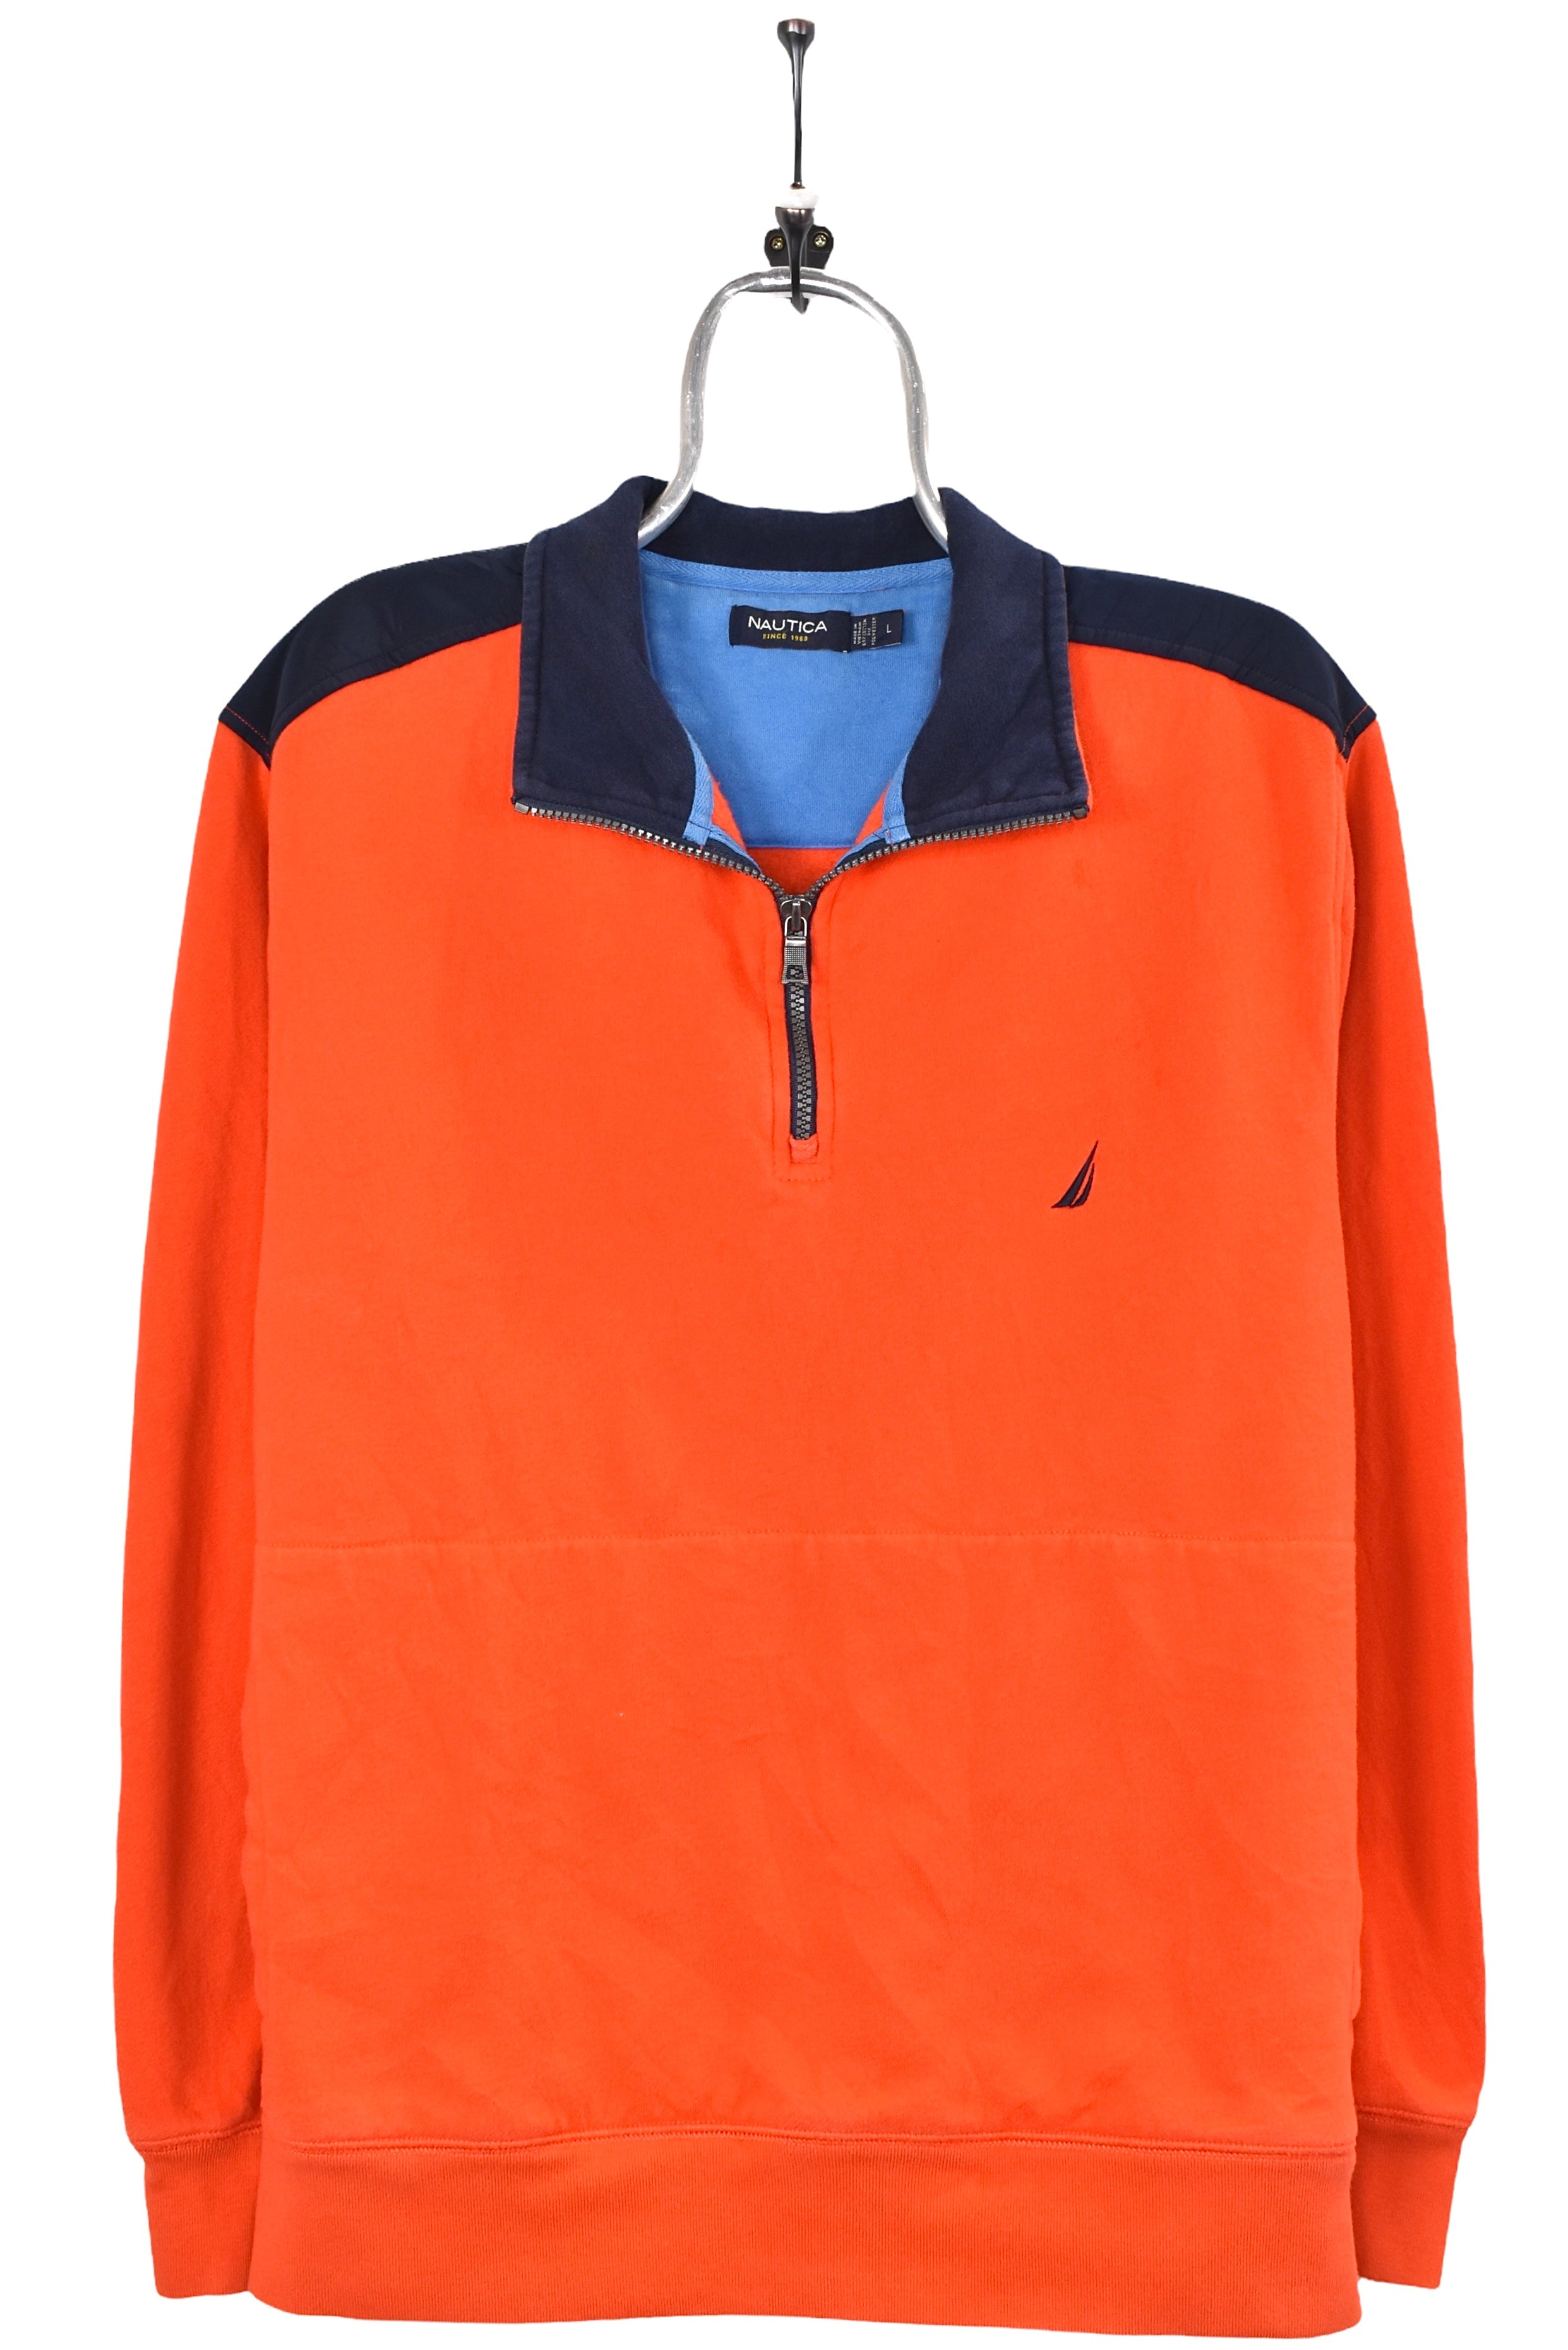 Vintage Nautica sweatshirt, orange embroidered 1/4 zip jumper - AU Large NAUTICA